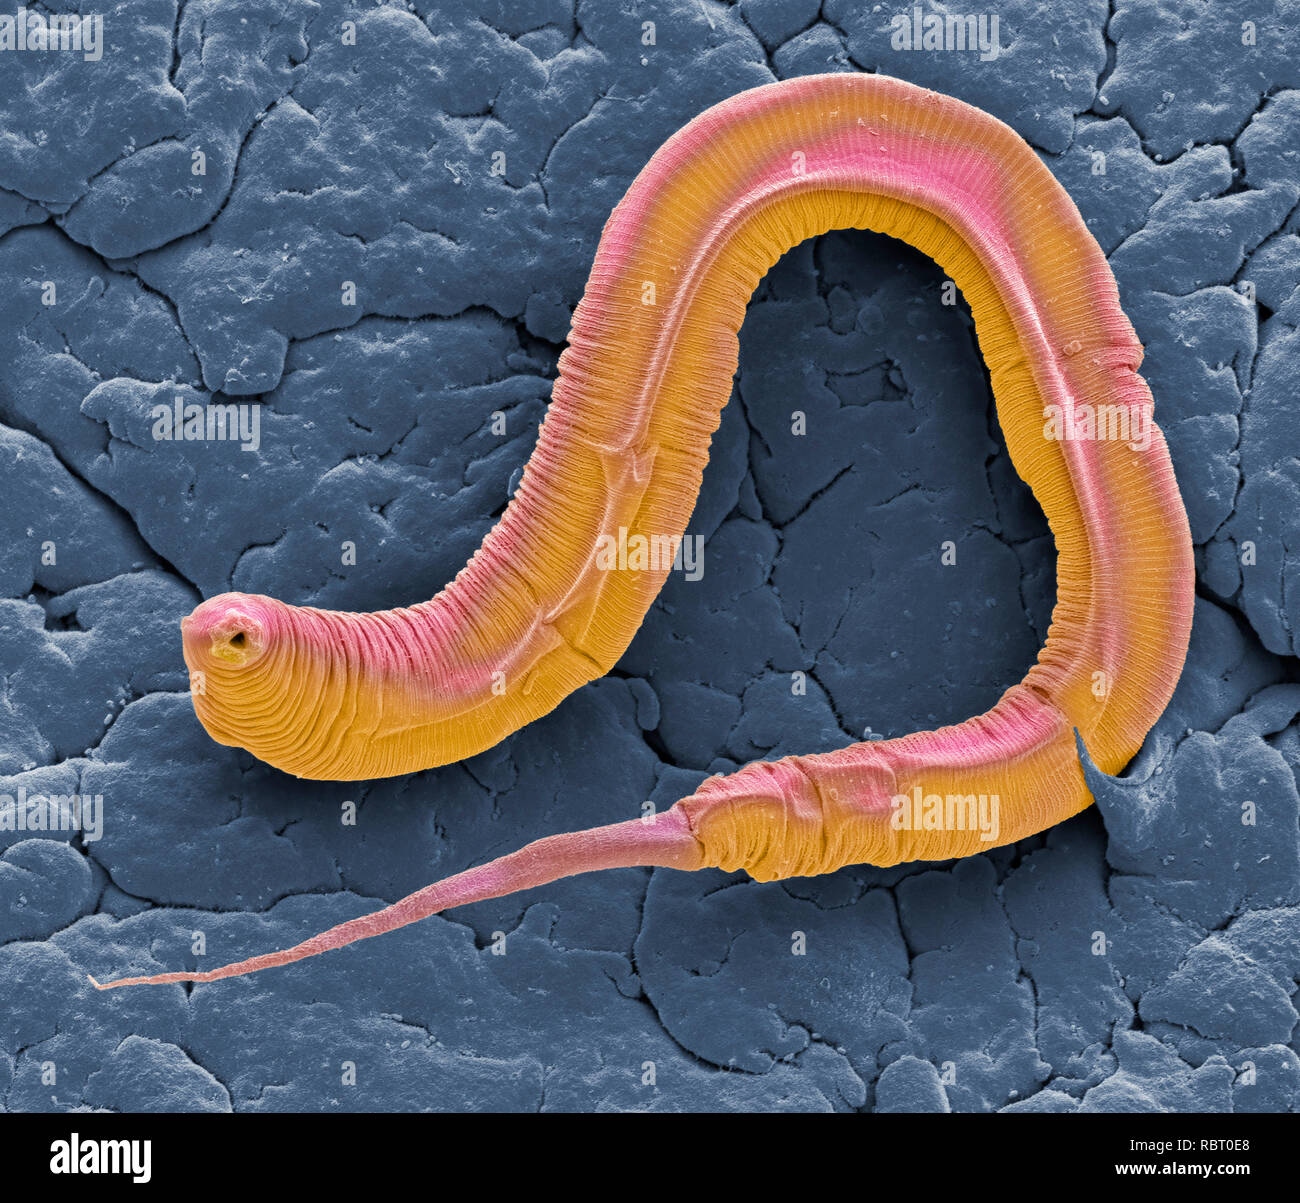 Ver Caenorhabditis elegans, couleur de l'analyse des électrons Microphotographie (SEM). C. elegans est le sol, un ver nématode hermaphrodite et l'un des plus étudié les animaux dans la recherche biologique et génétique. Une tendance à reproduire par l'auto-fertilisation (donnant lieu à l'identique descendants), avec le peu de temps nécessaire pour atteindre la maturité, font de ce petit ver un sujet idéal. Agrandissement : x1300 lors de l'impression à 10 centimètres de large Banque D'Images